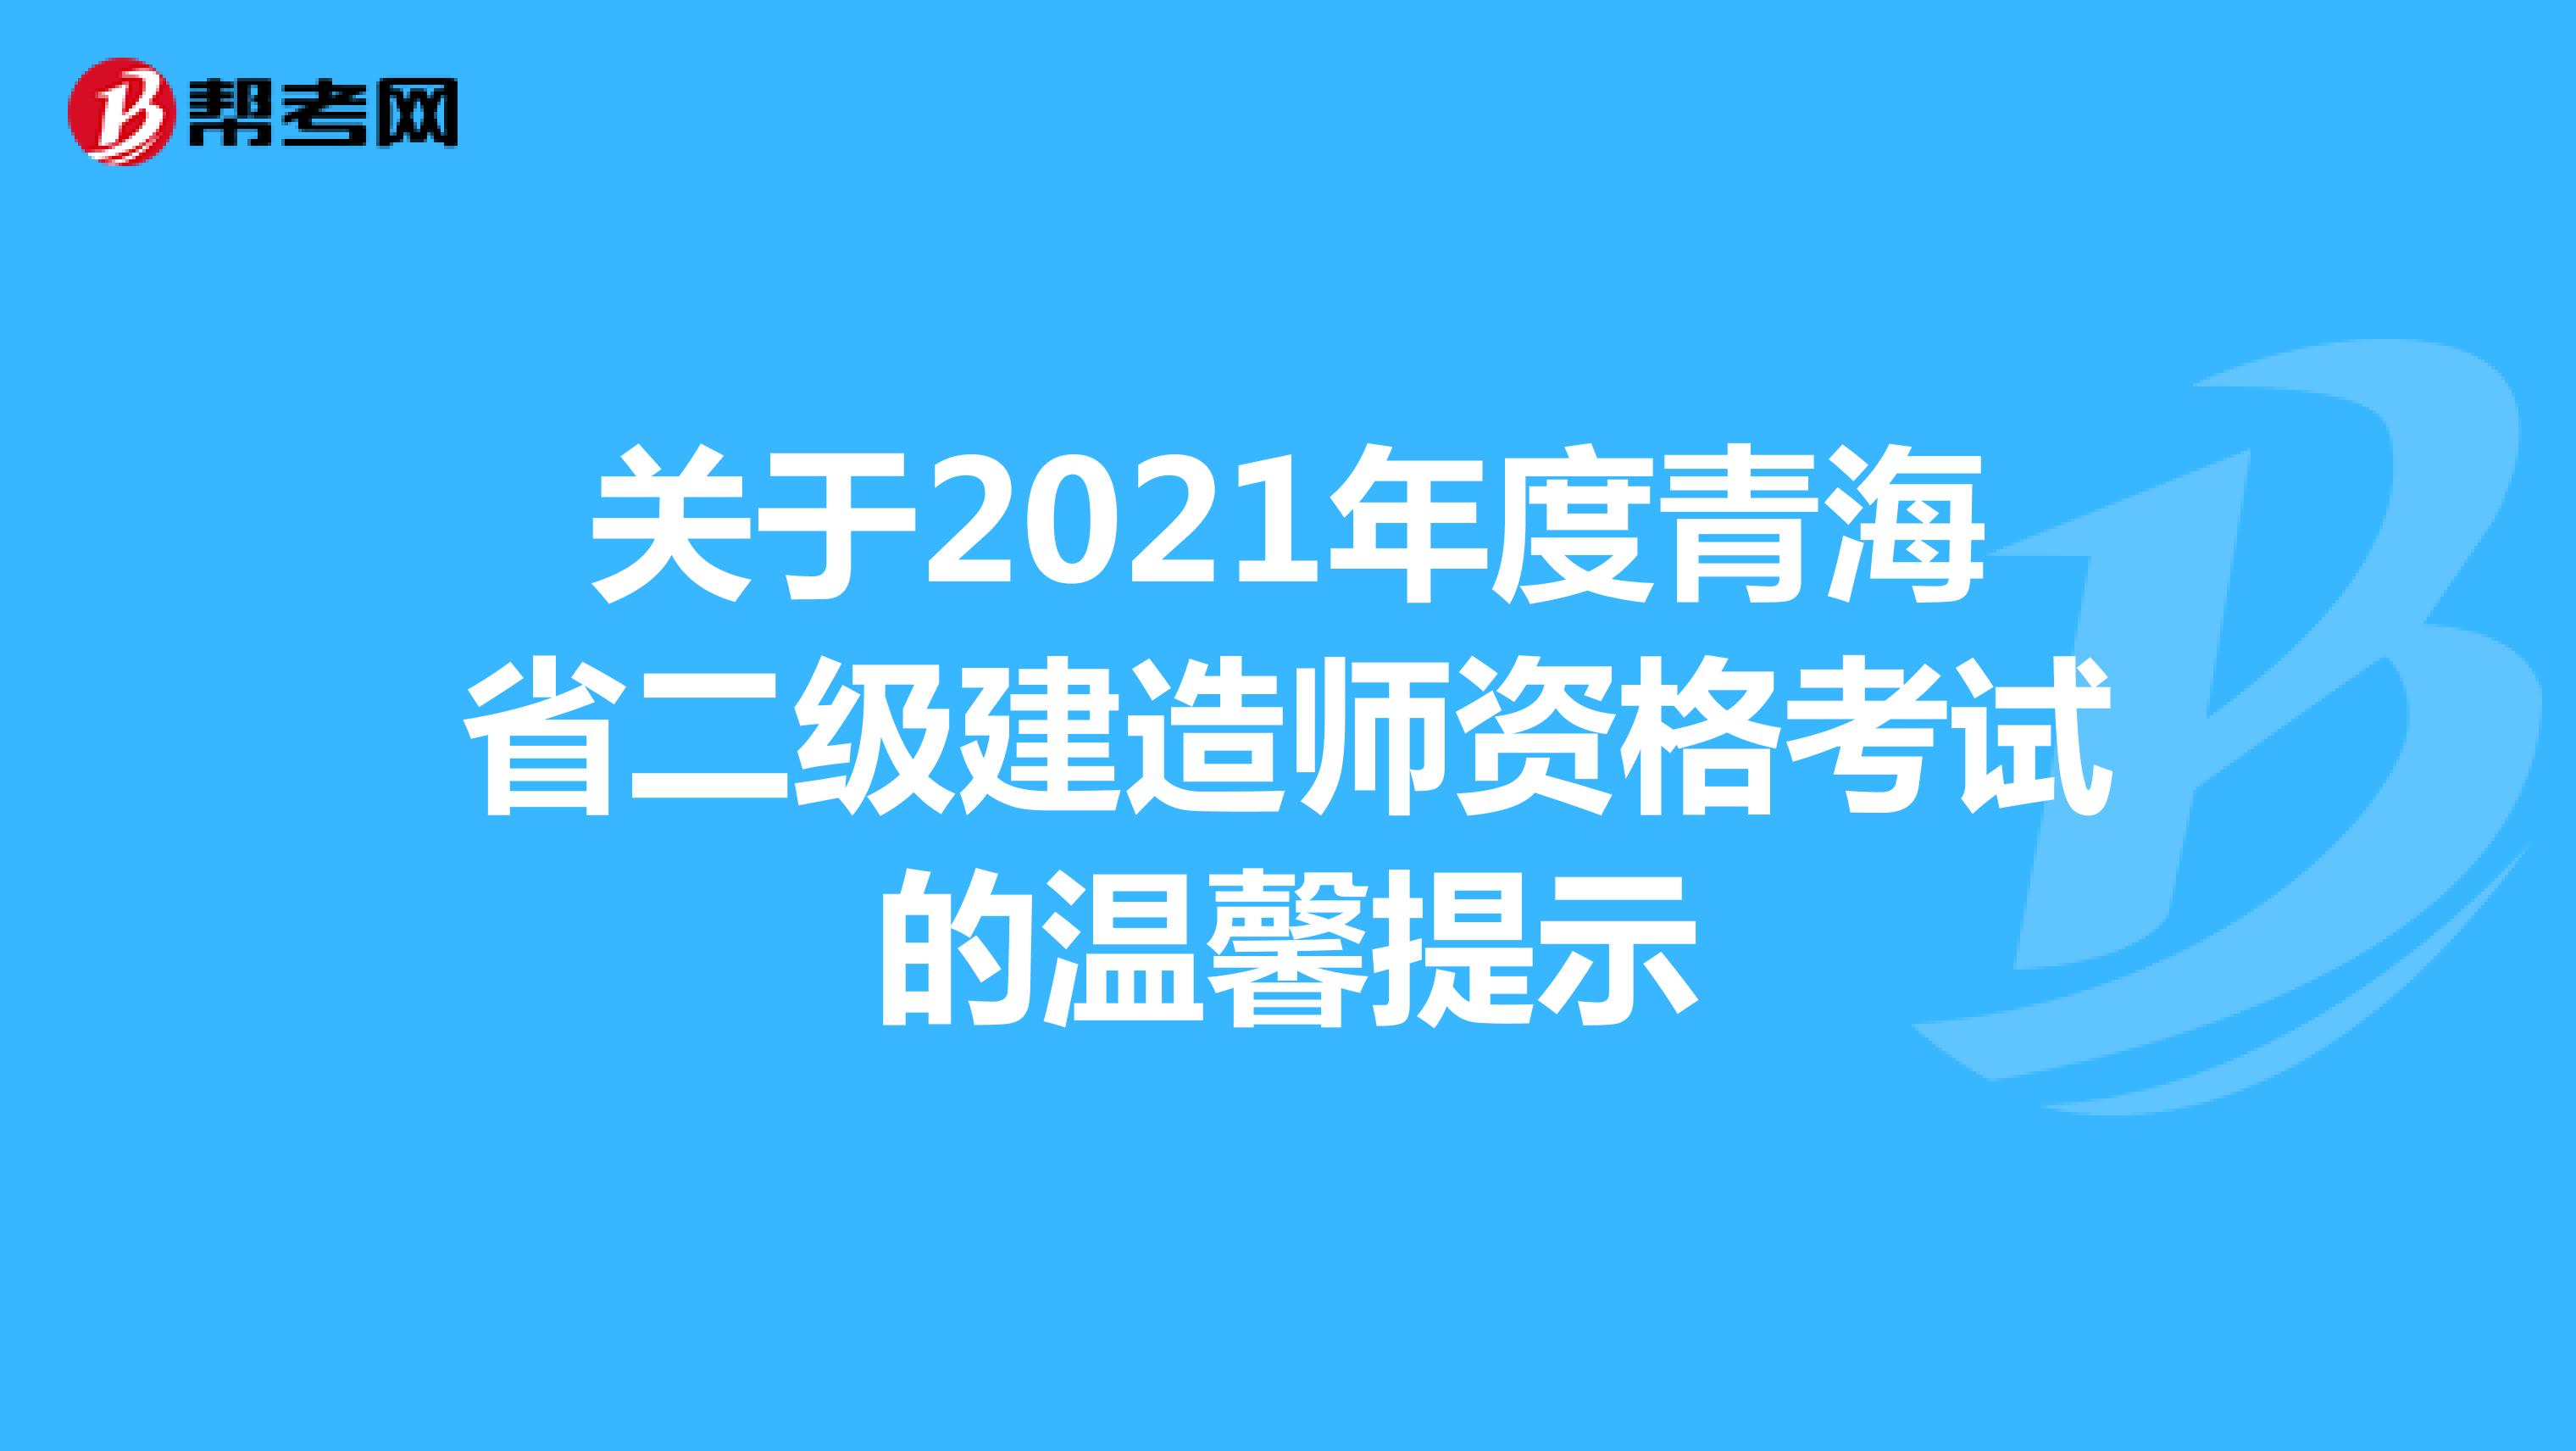 关于2021年度青海省二级建造师资格考试的温馨提示